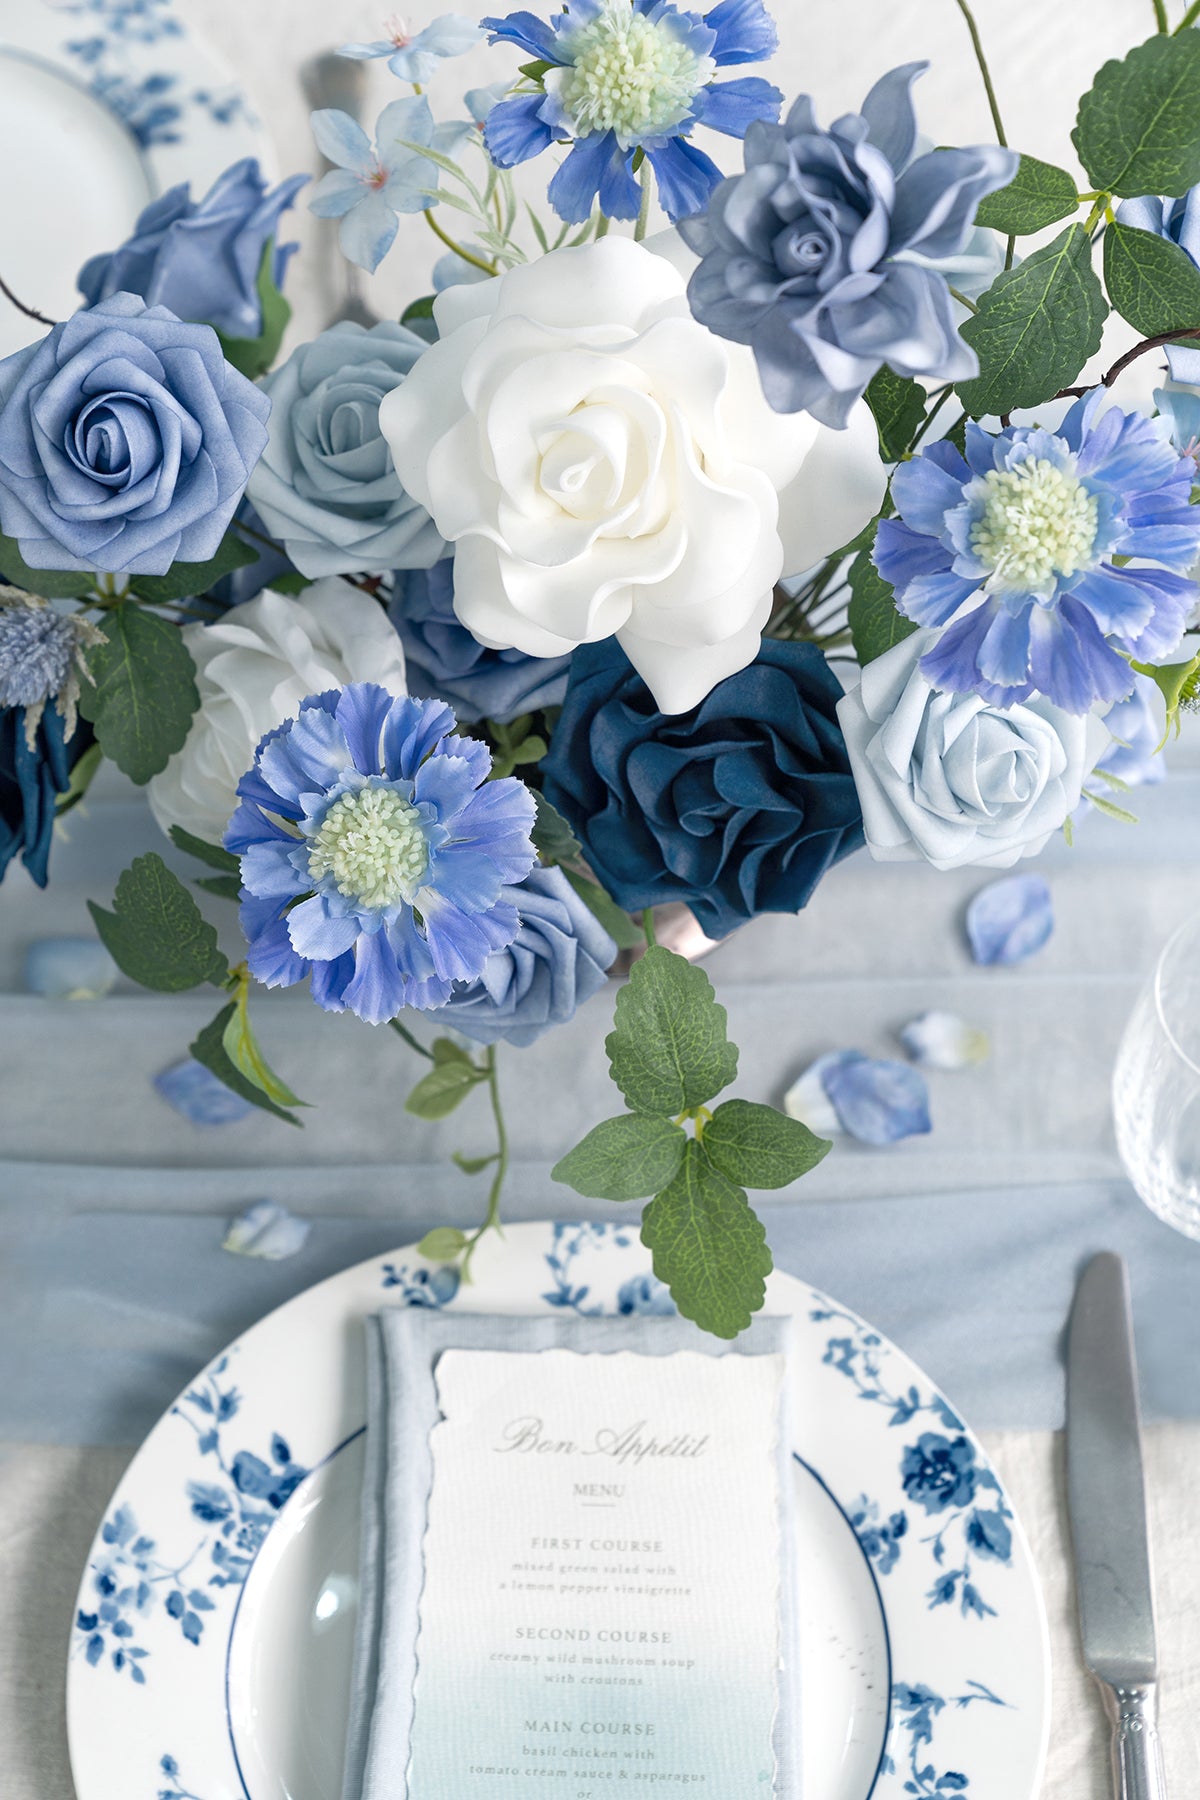 DIY Designer Flower Box in Timeless French Blue & White